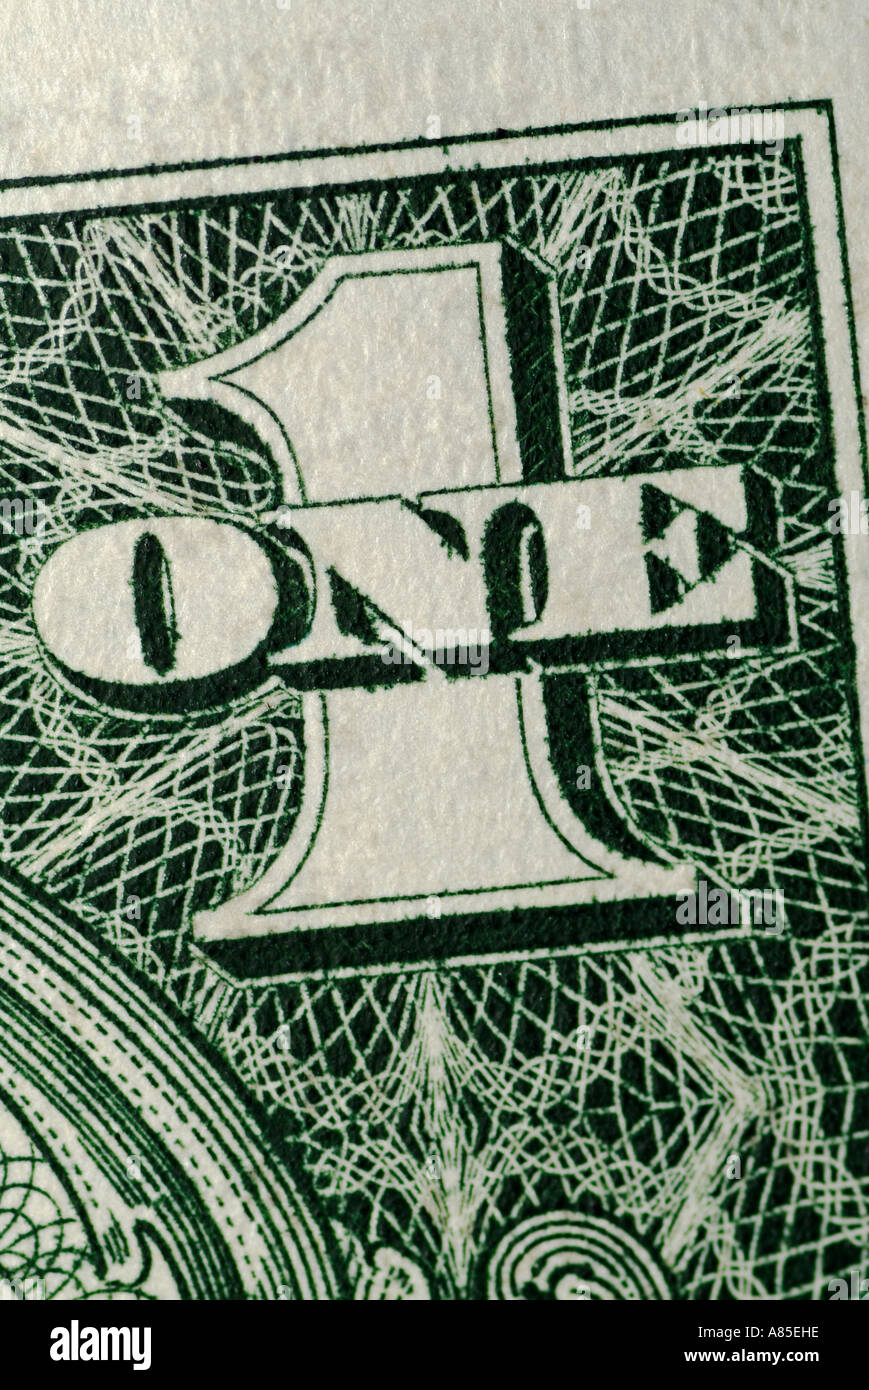 Résumé de la 1 symbole sur une note d'un Dollar US Banque D'Images